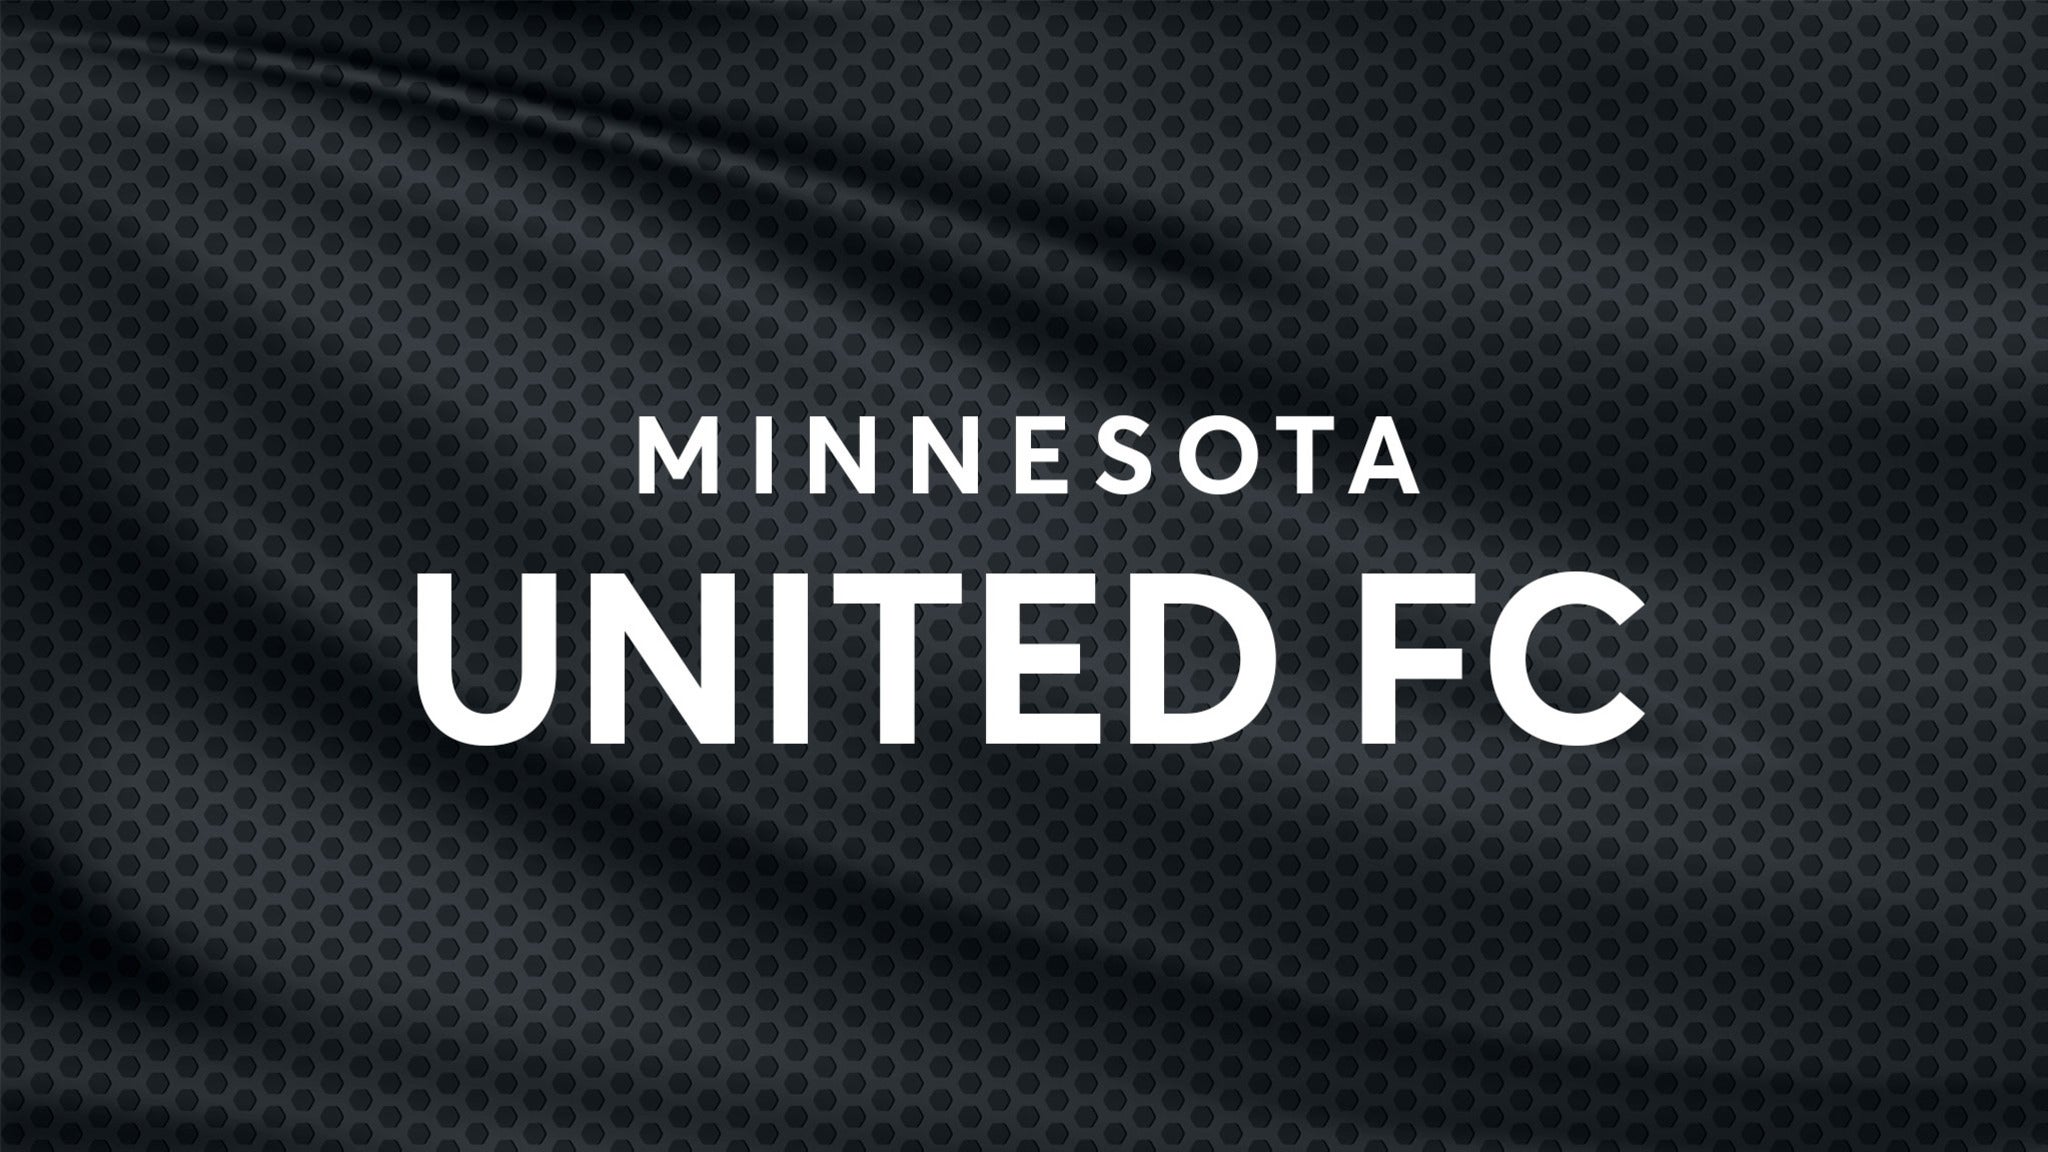 Minnesota United FC vs. New York City FC at Allianz Field